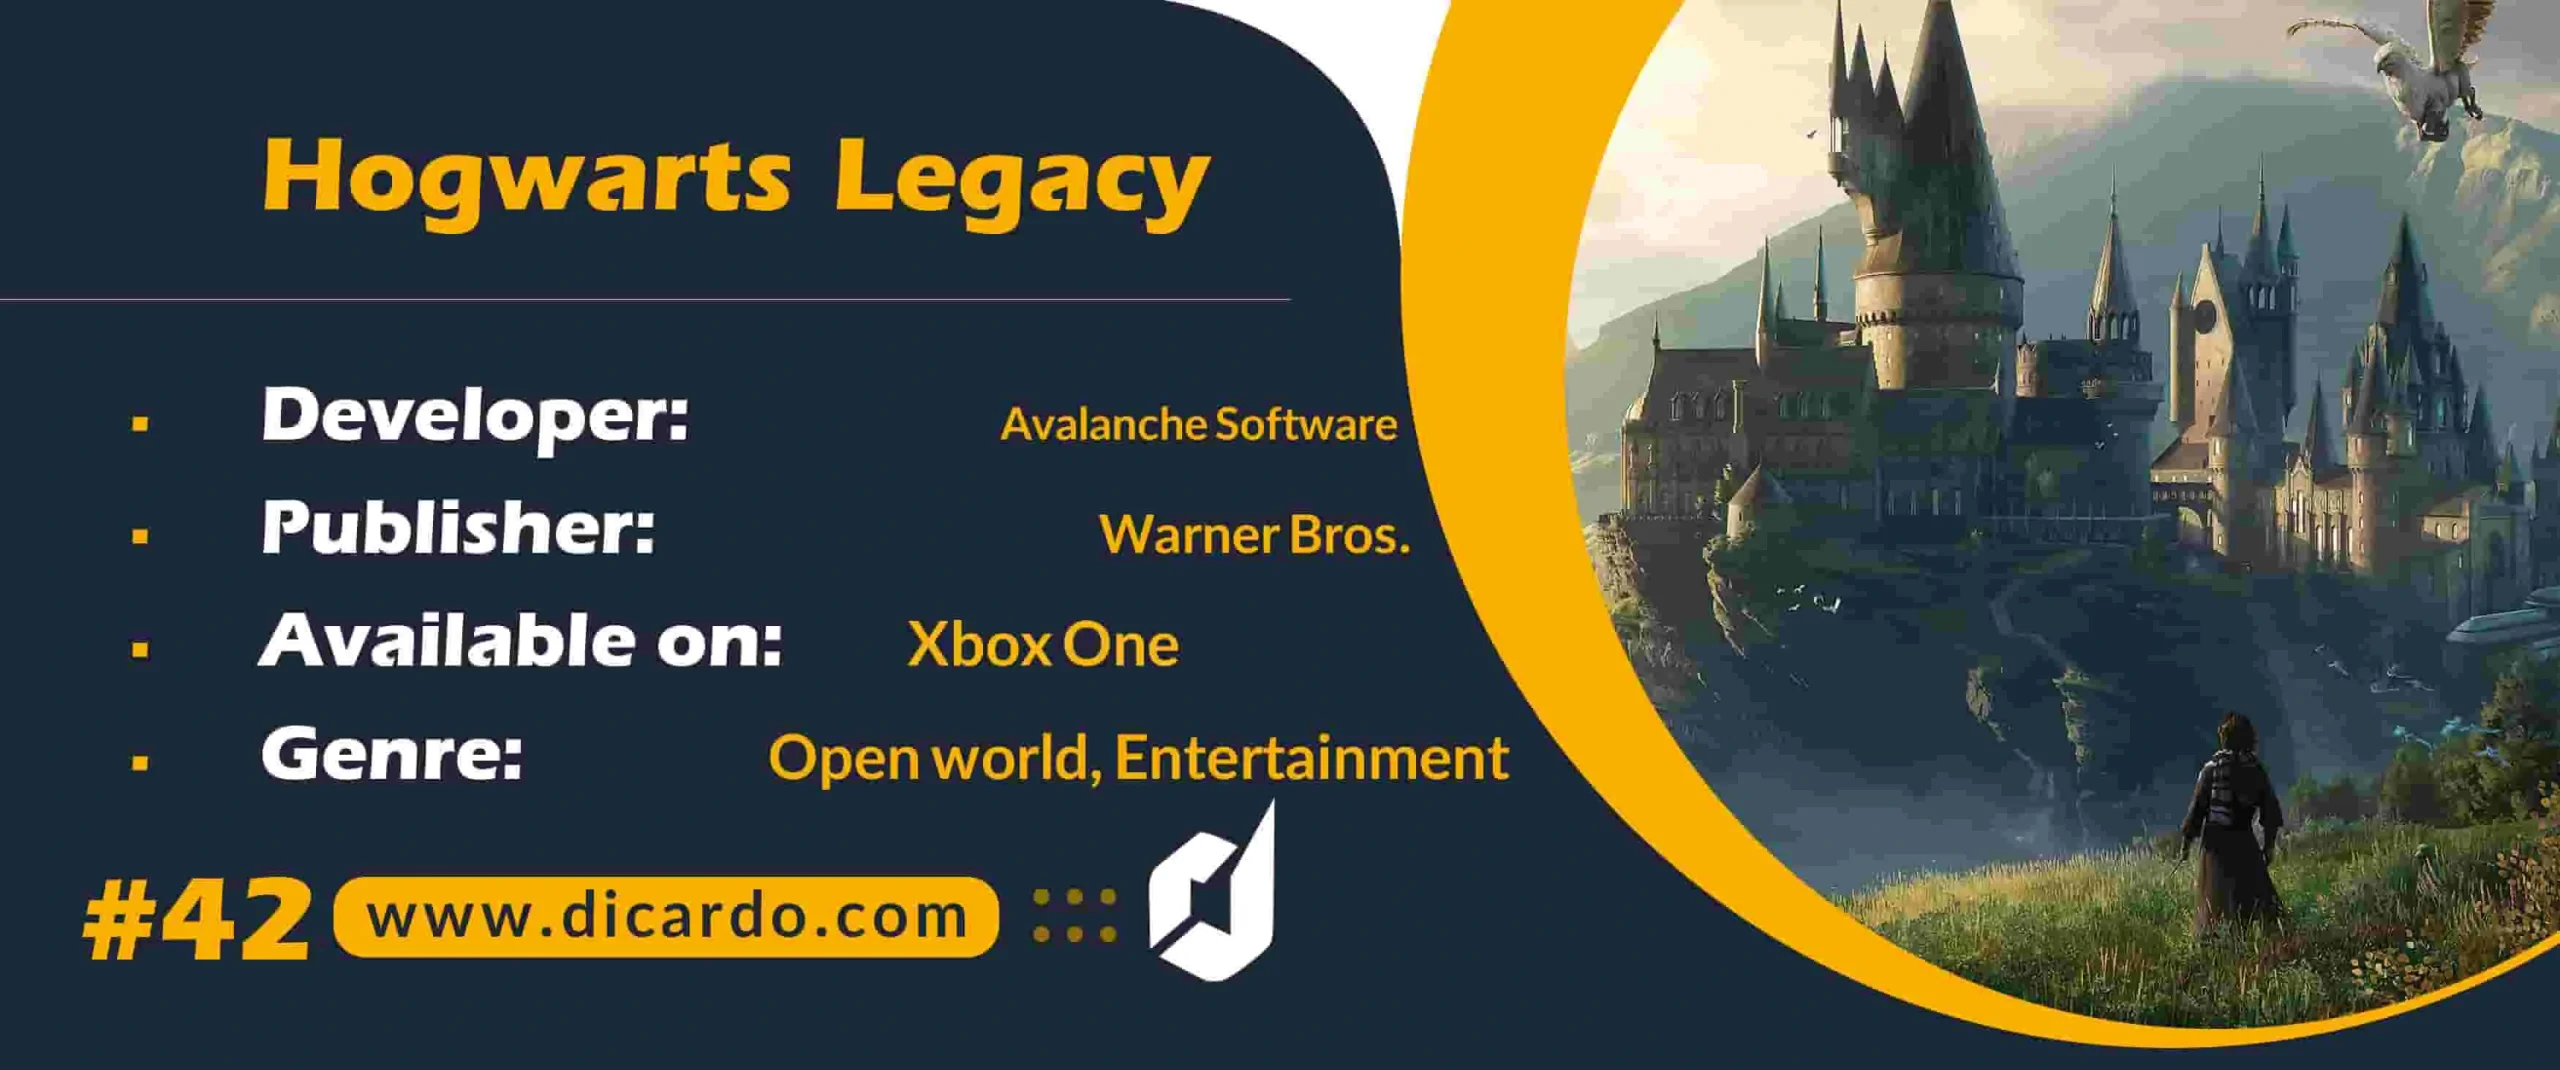 #42 هاگوارتز لگاسی Hogwarts Legacy از بازیهای Xbox One و یک RPG اکشن جهان باز